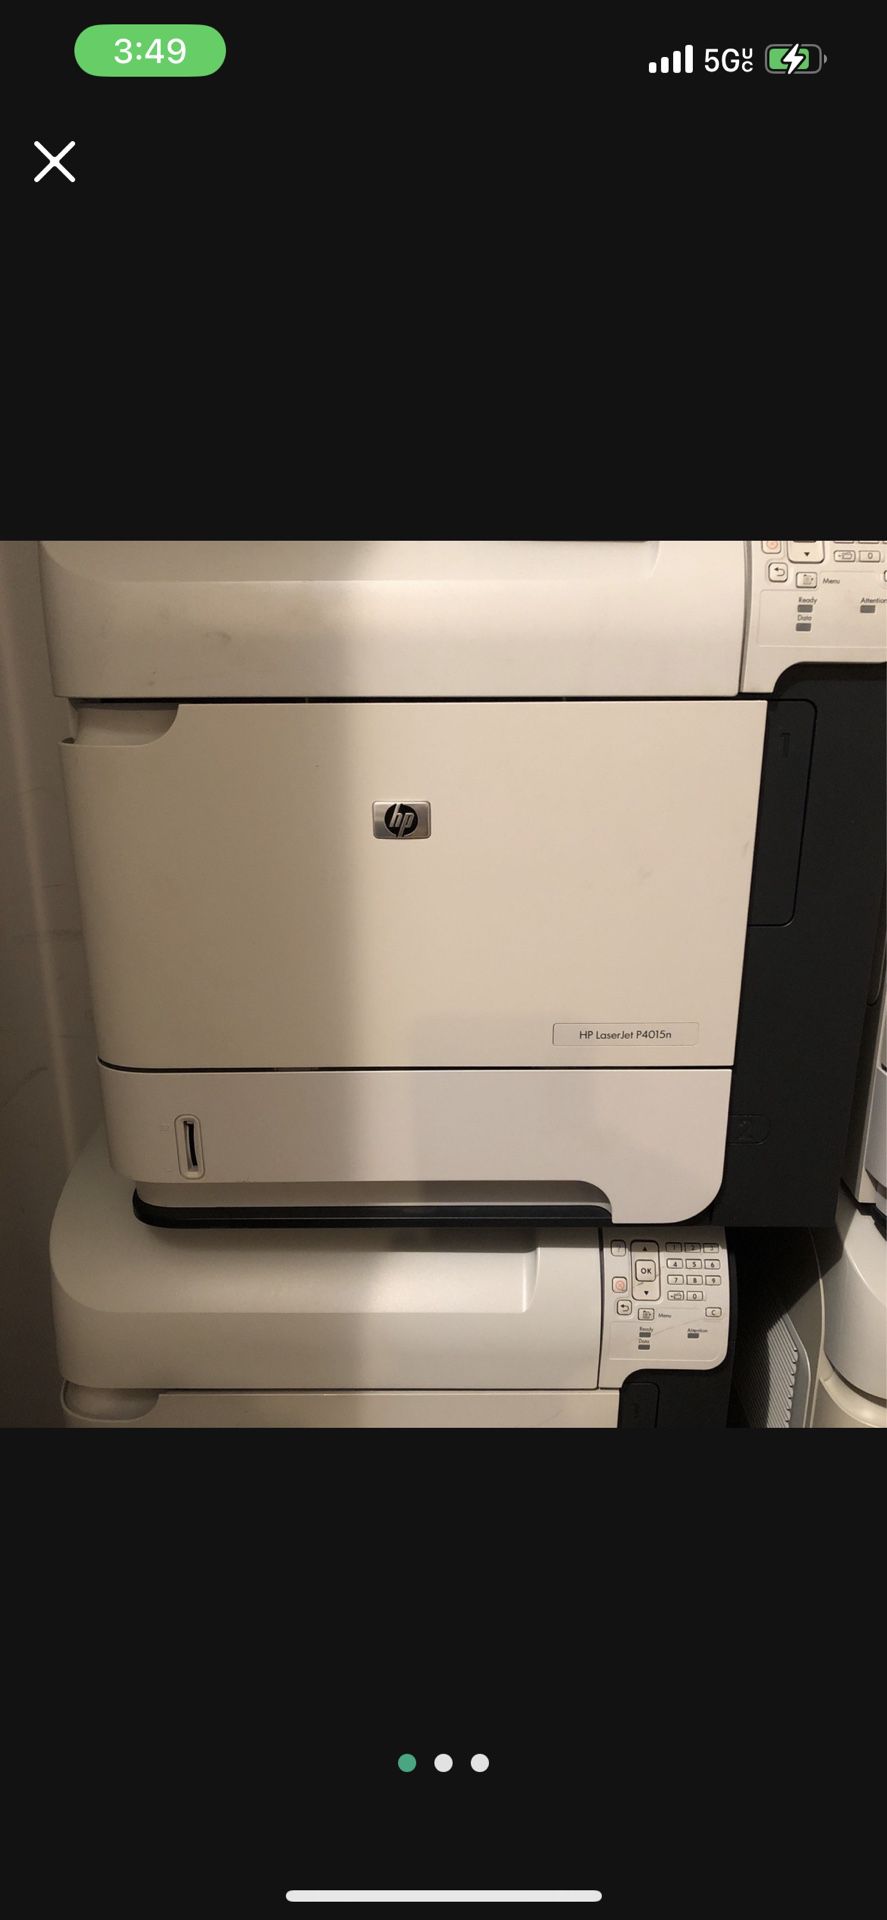 Laser Jet Printer Hewlett-Packard P4015n